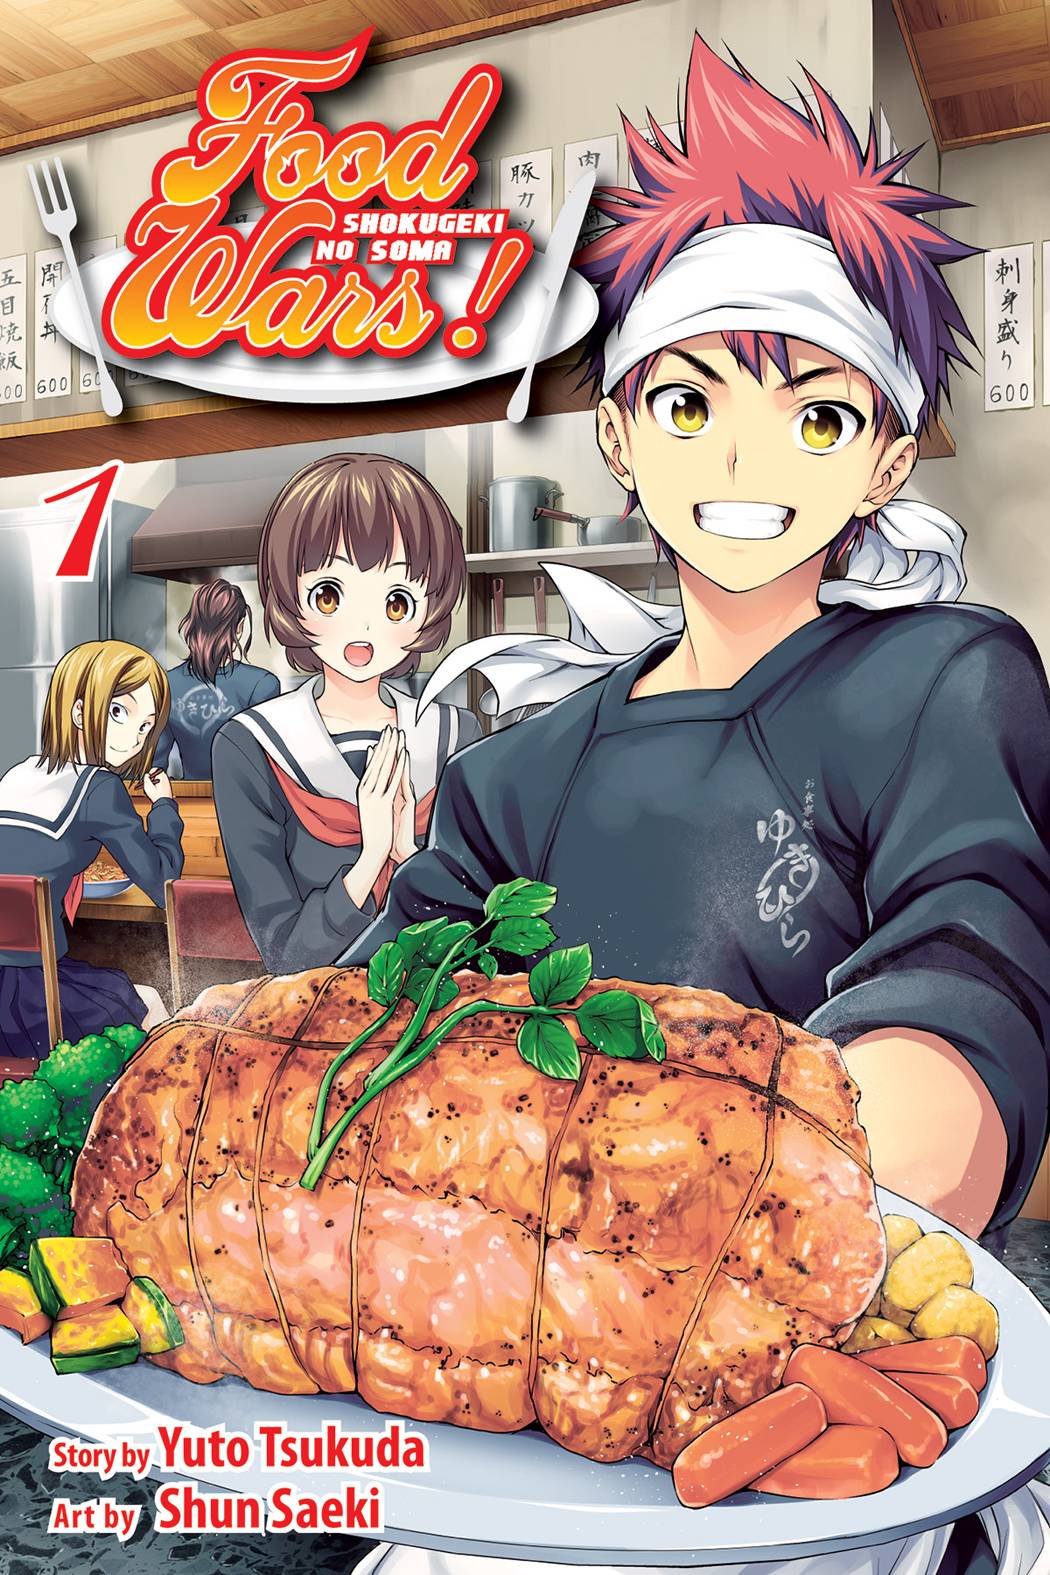 Food Wars Shokugeki No Soma Vol. 01 (MR) (C: 1-0-1)